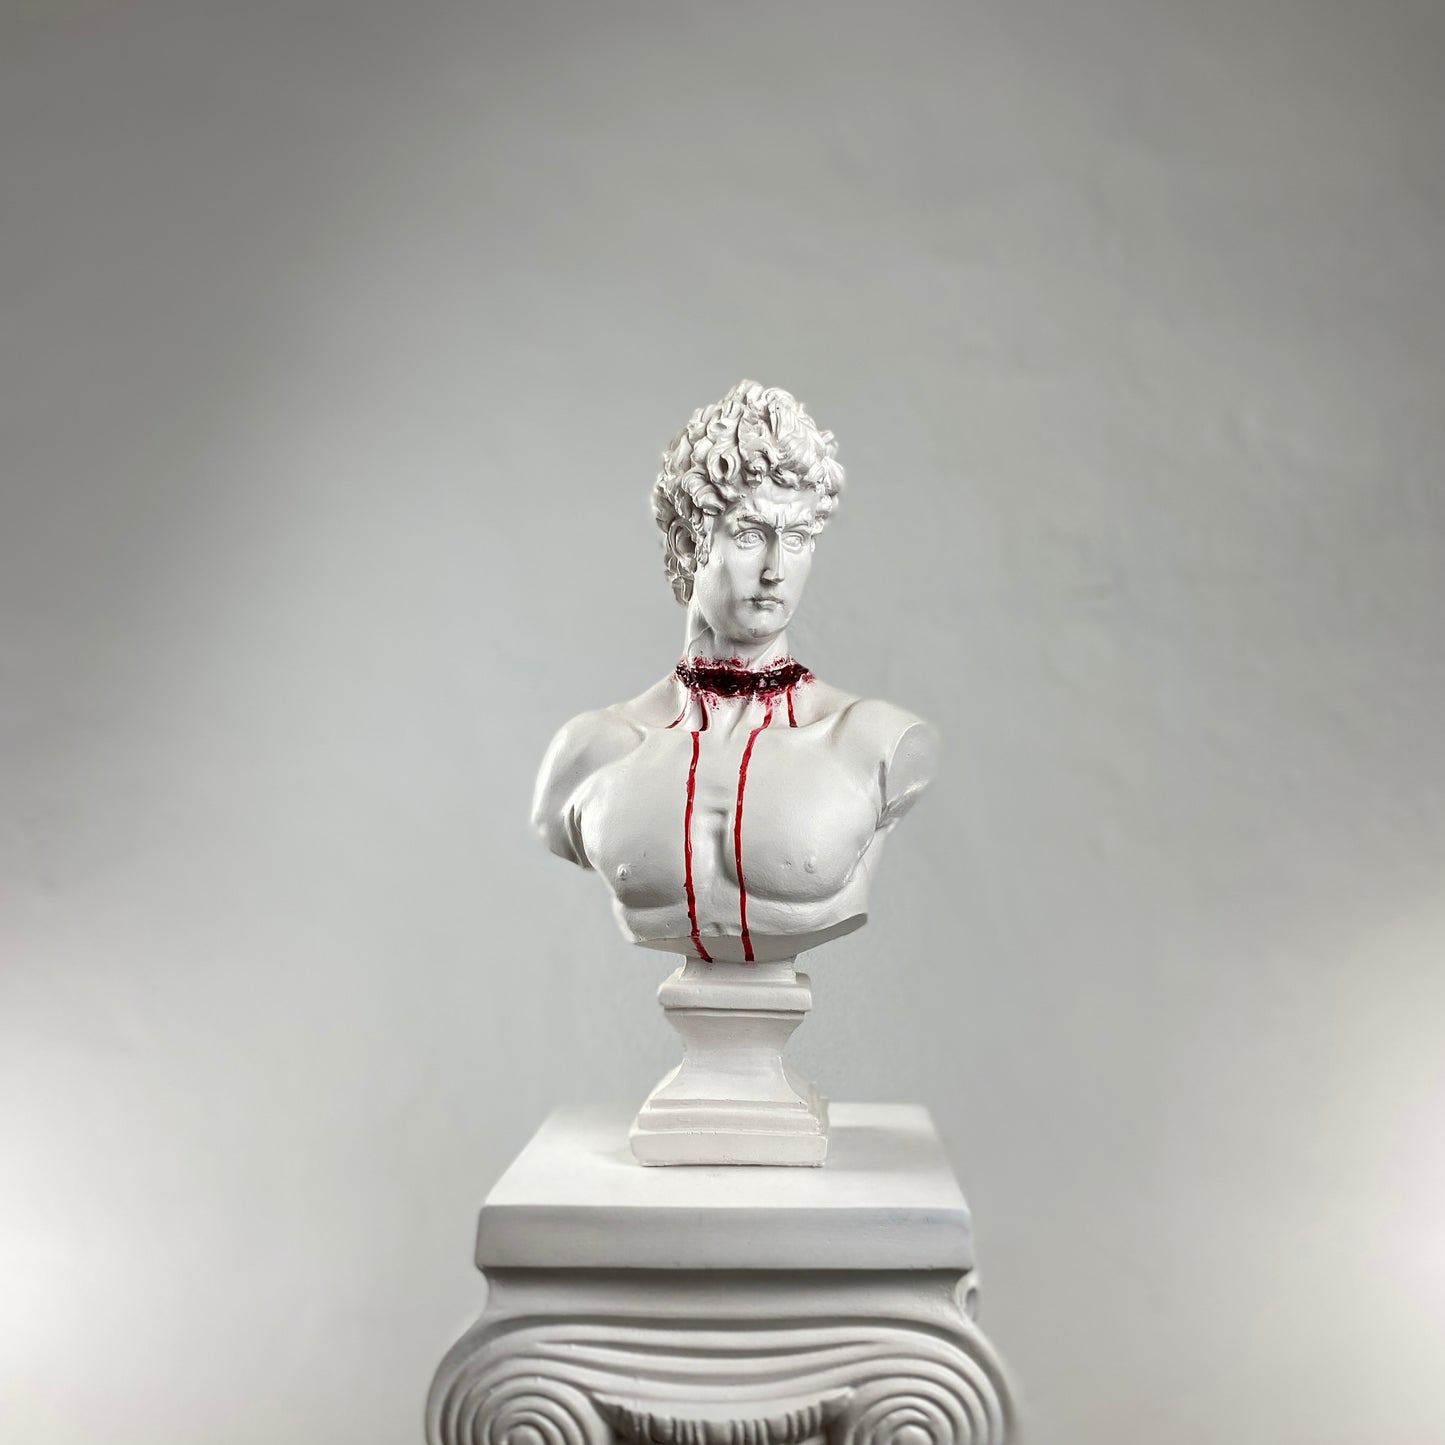 David 'Cut Throat' Pop Art Sculpture, Modern Home Decor, Large Sculpture